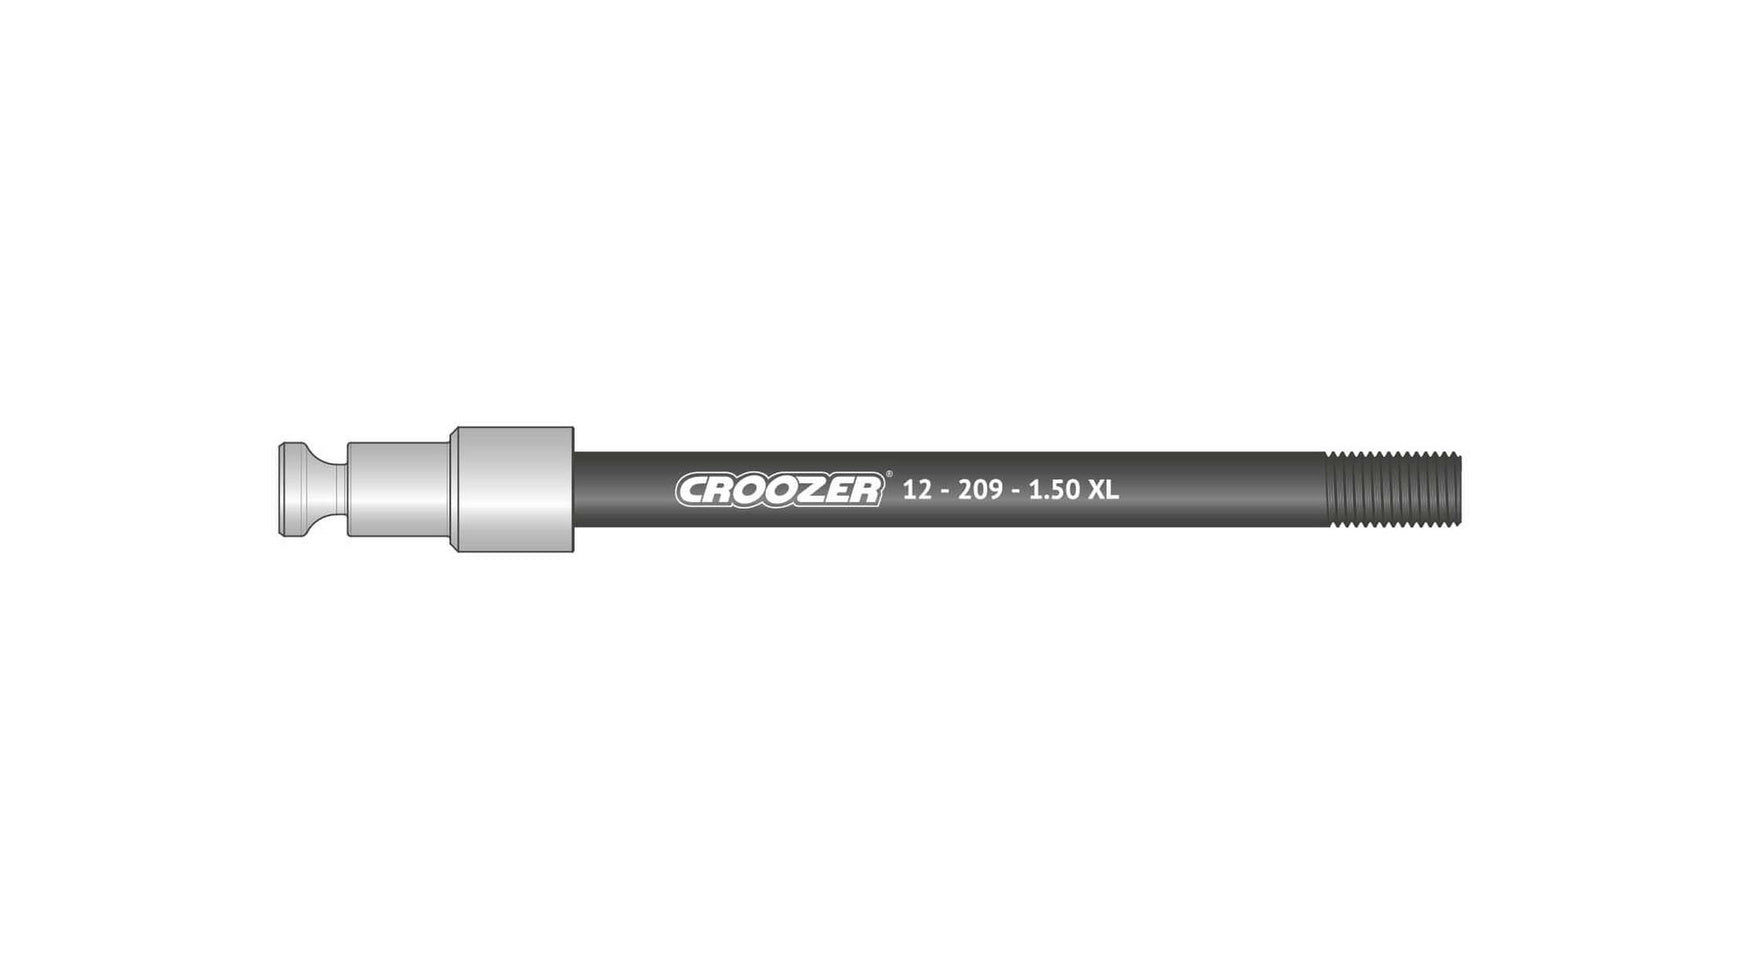 Croozer 12-209-1.50 XL von CROOZER